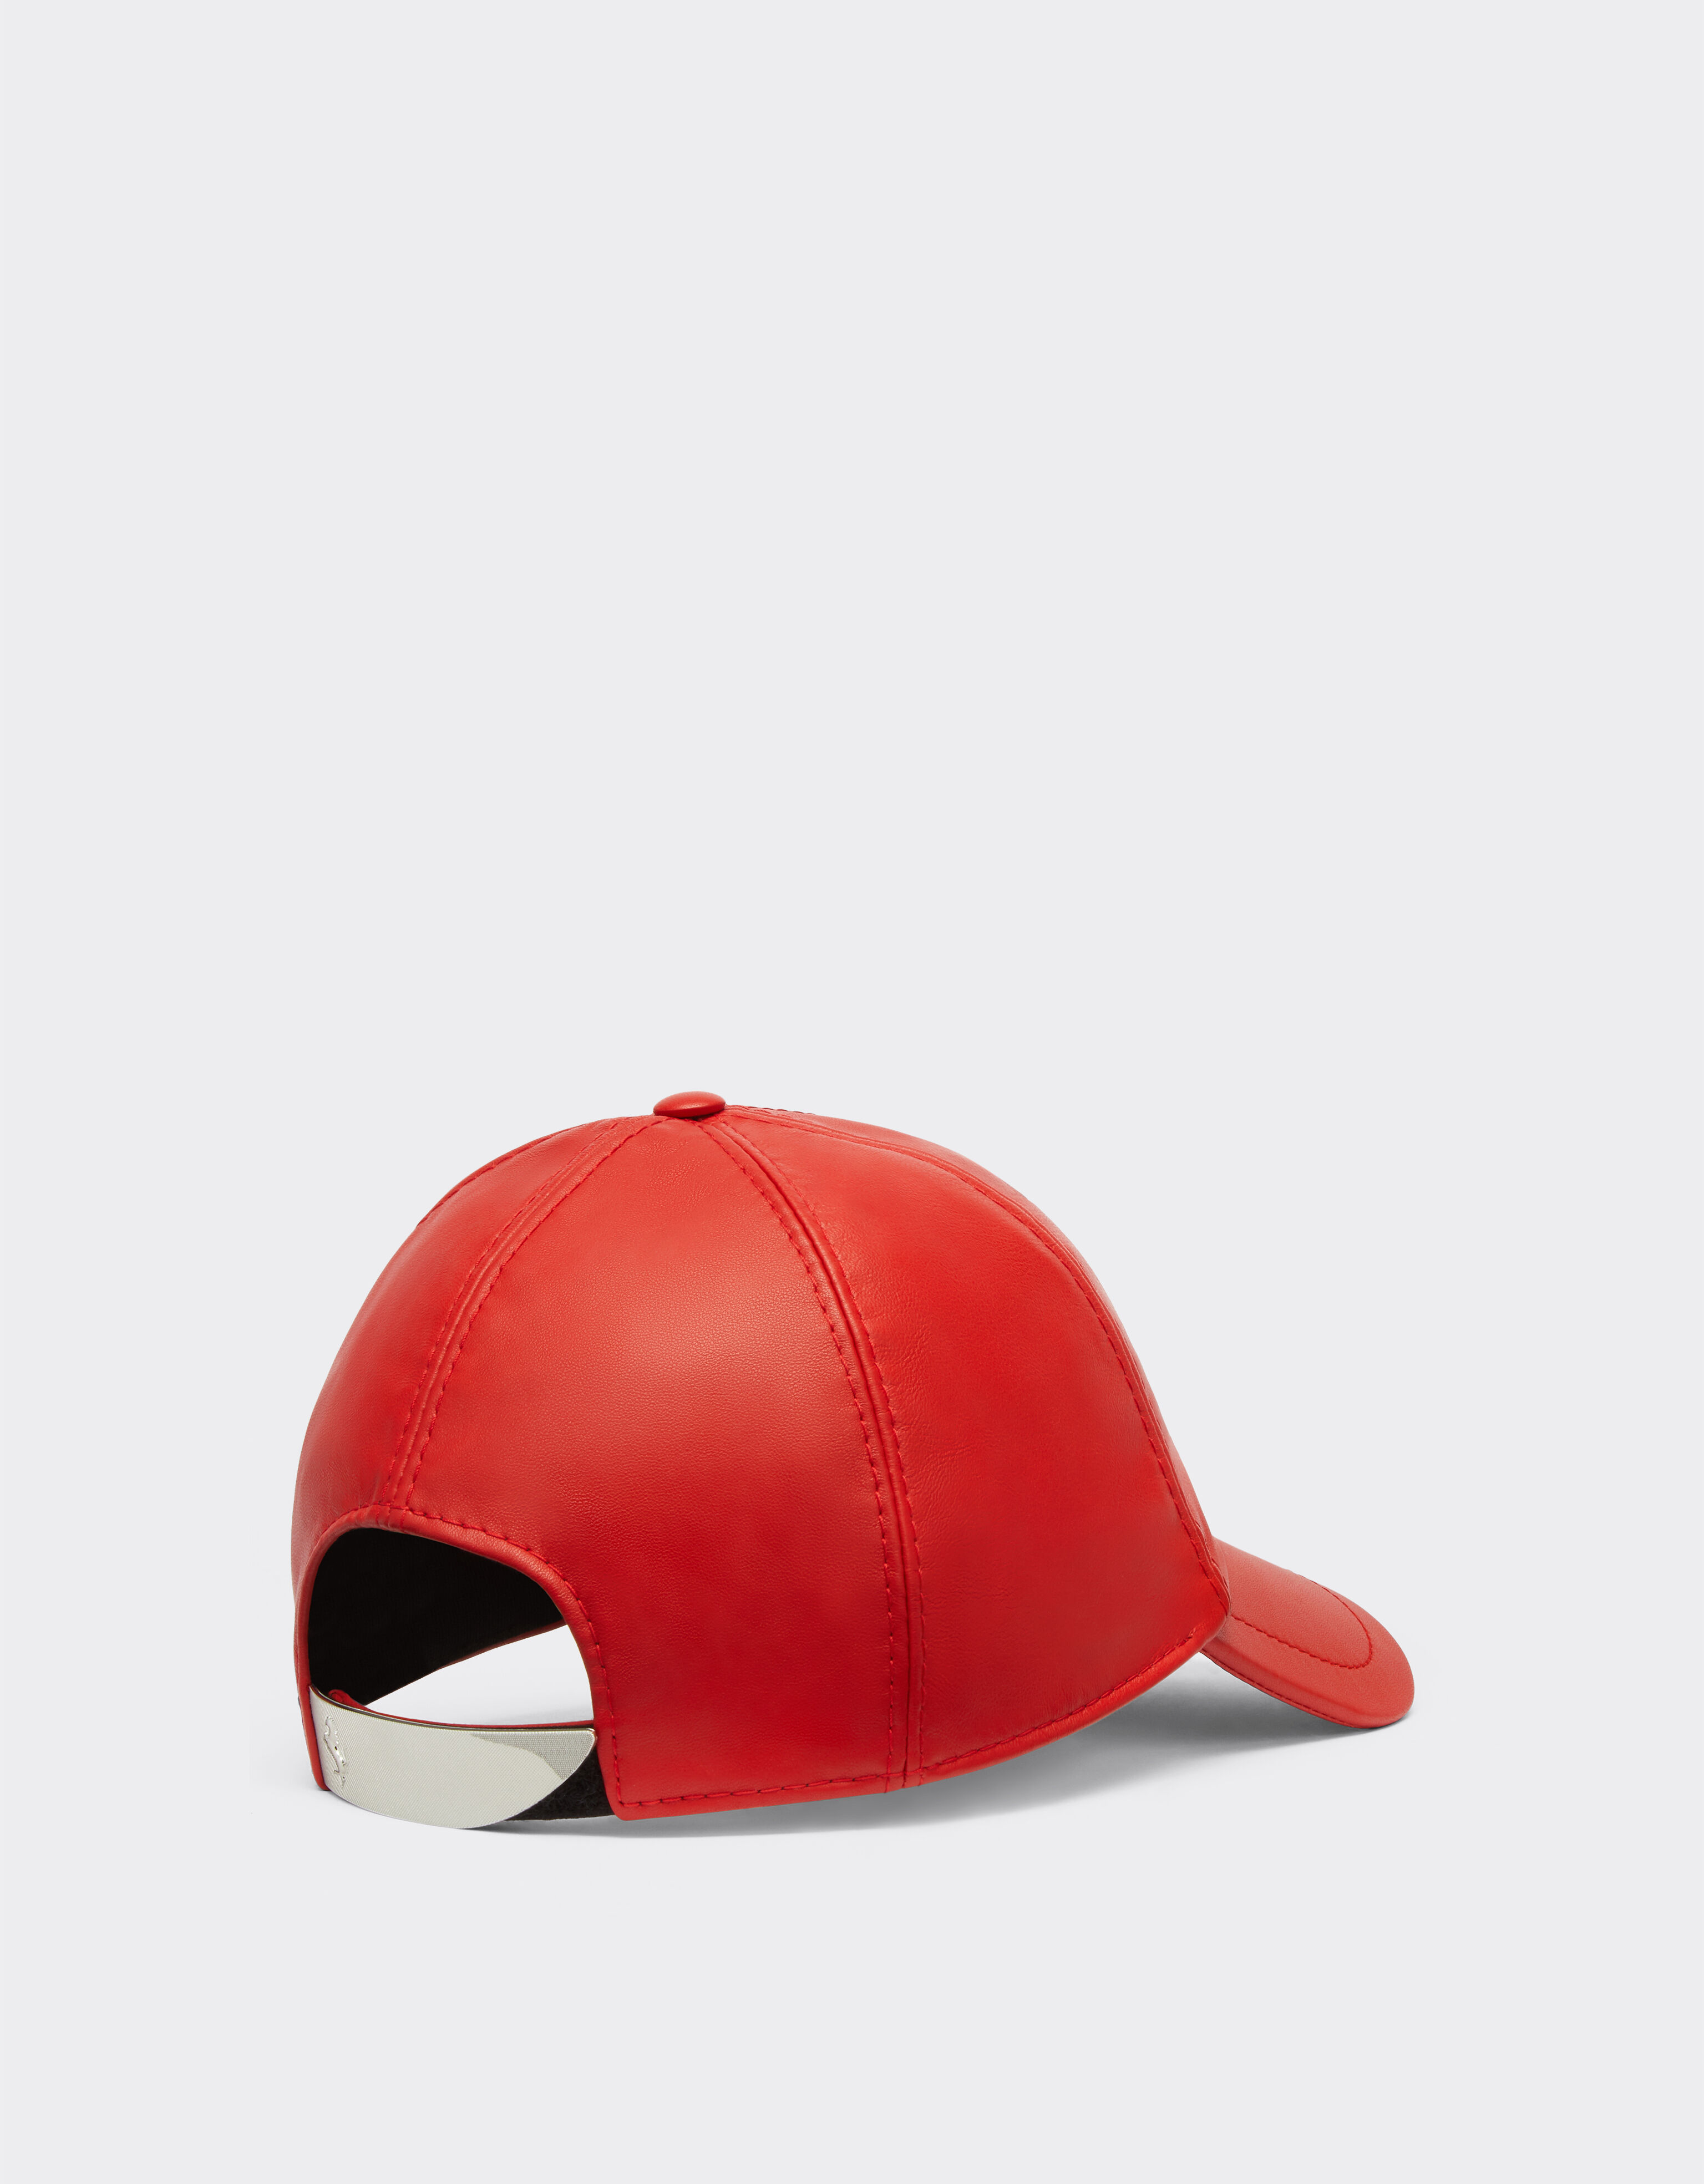 Ferrari Baseball Cap con Cavallino Rampante Rosso Corsa 20264f